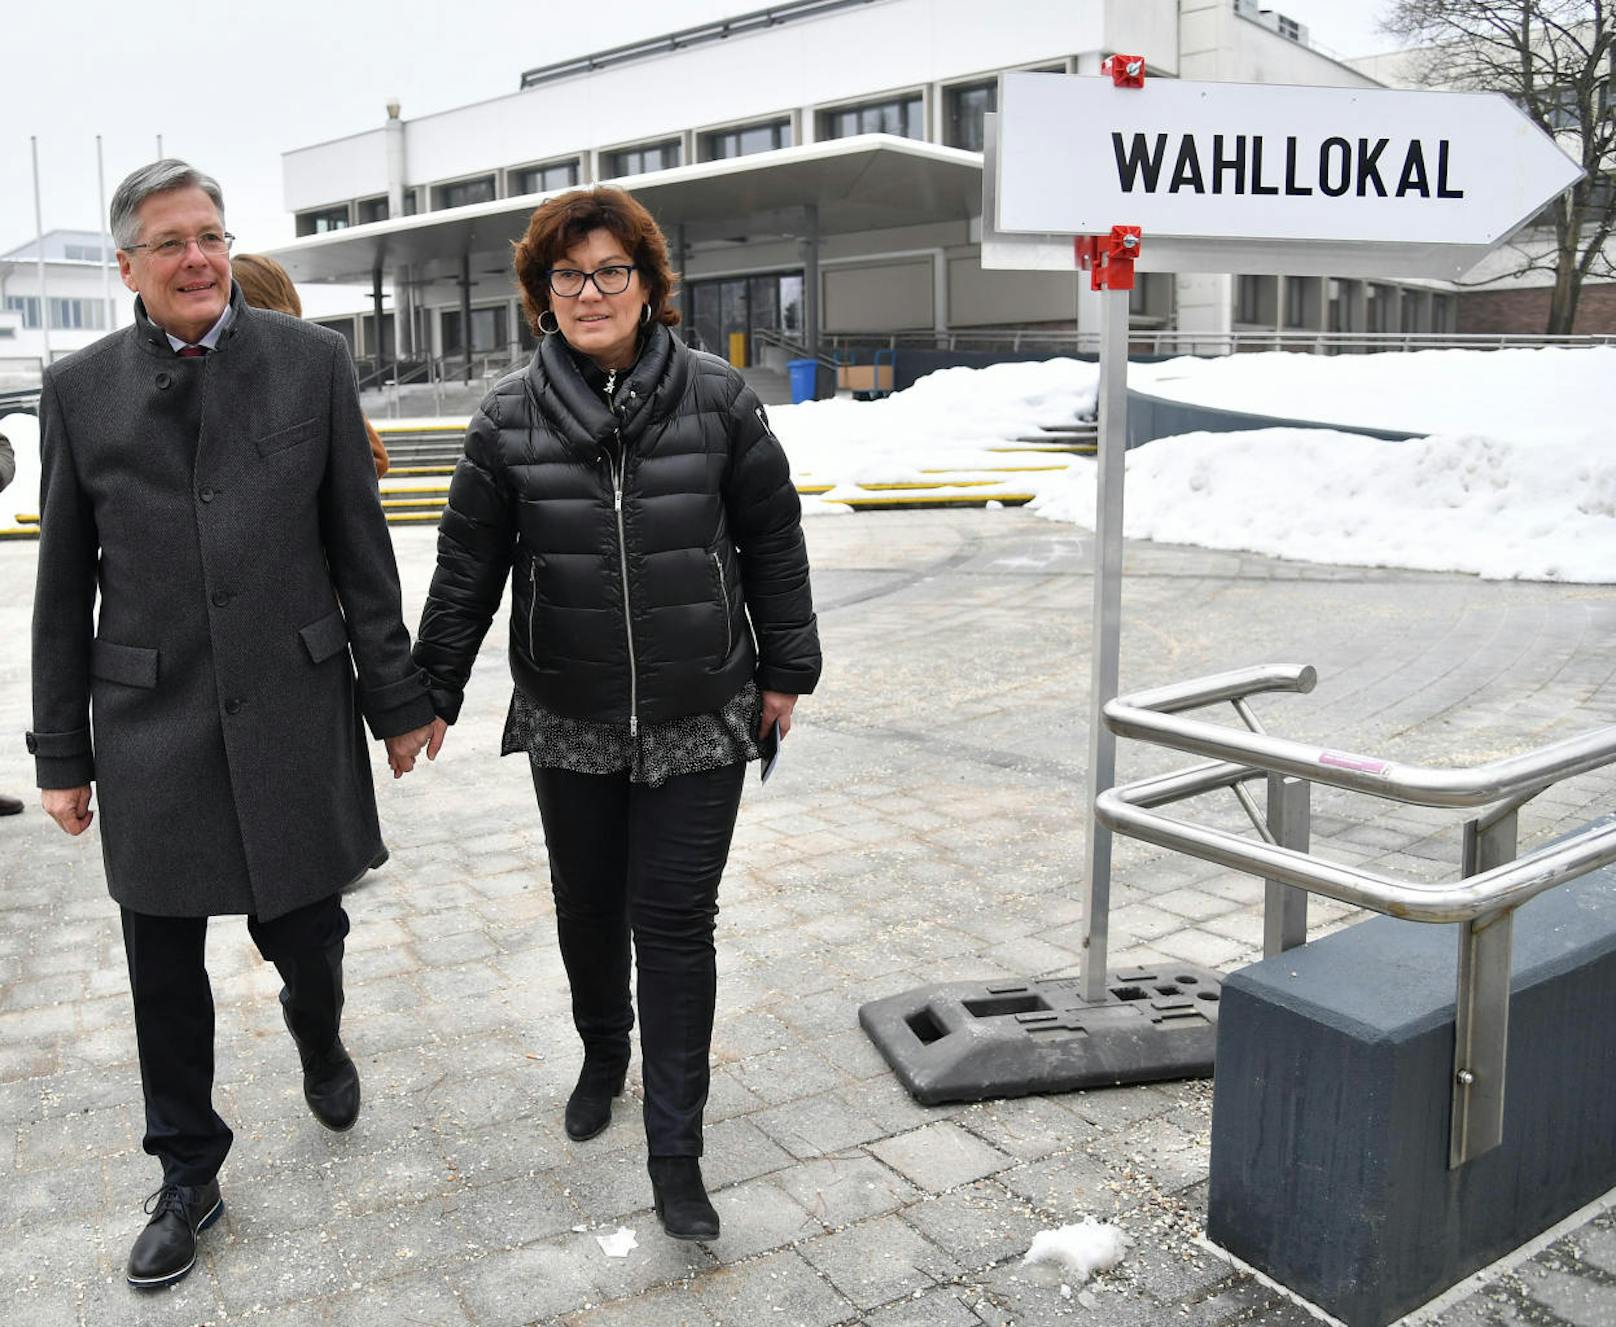 Der Kärntner Landeshauptmann und SPÖ-Spitzenkandidat Peter Kaiser mit seiner Frau vor der Stimmabgabe in Klagenfurt am Sonntag, 4. März 2018, anlässlich der Kärntner Landtagswahl.